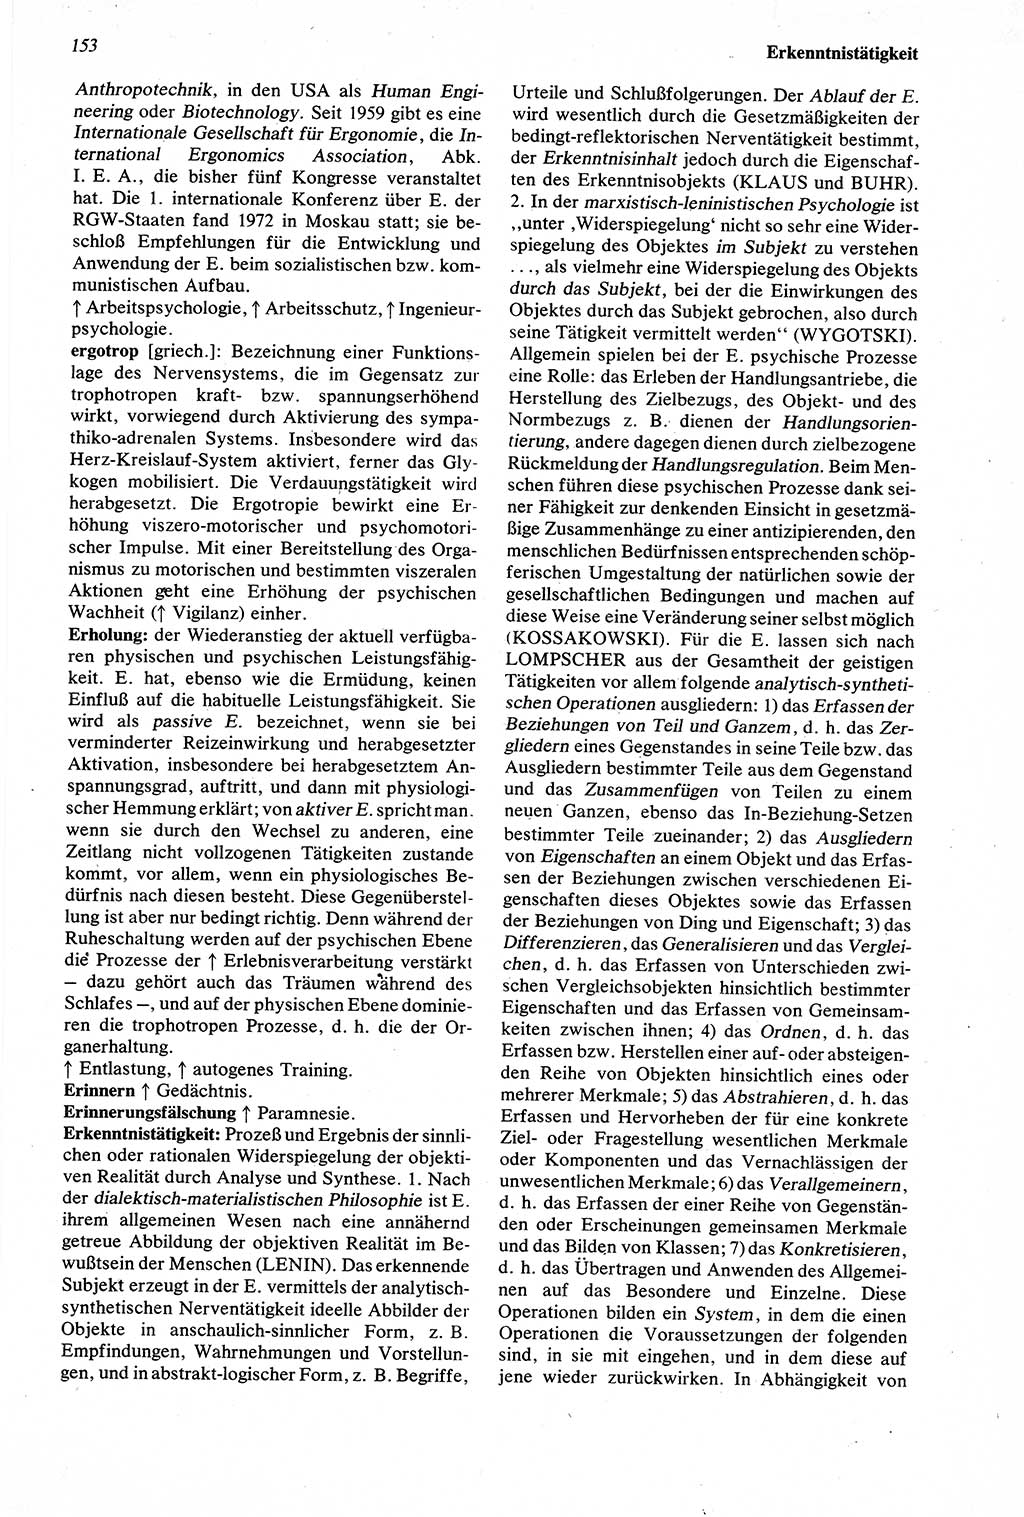 Wörterbuch der Psychologie [Deutsche Demokratische Republik (DDR)] 1976, Seite 153 (Wb. Psych. DDR 1976, S. 153)